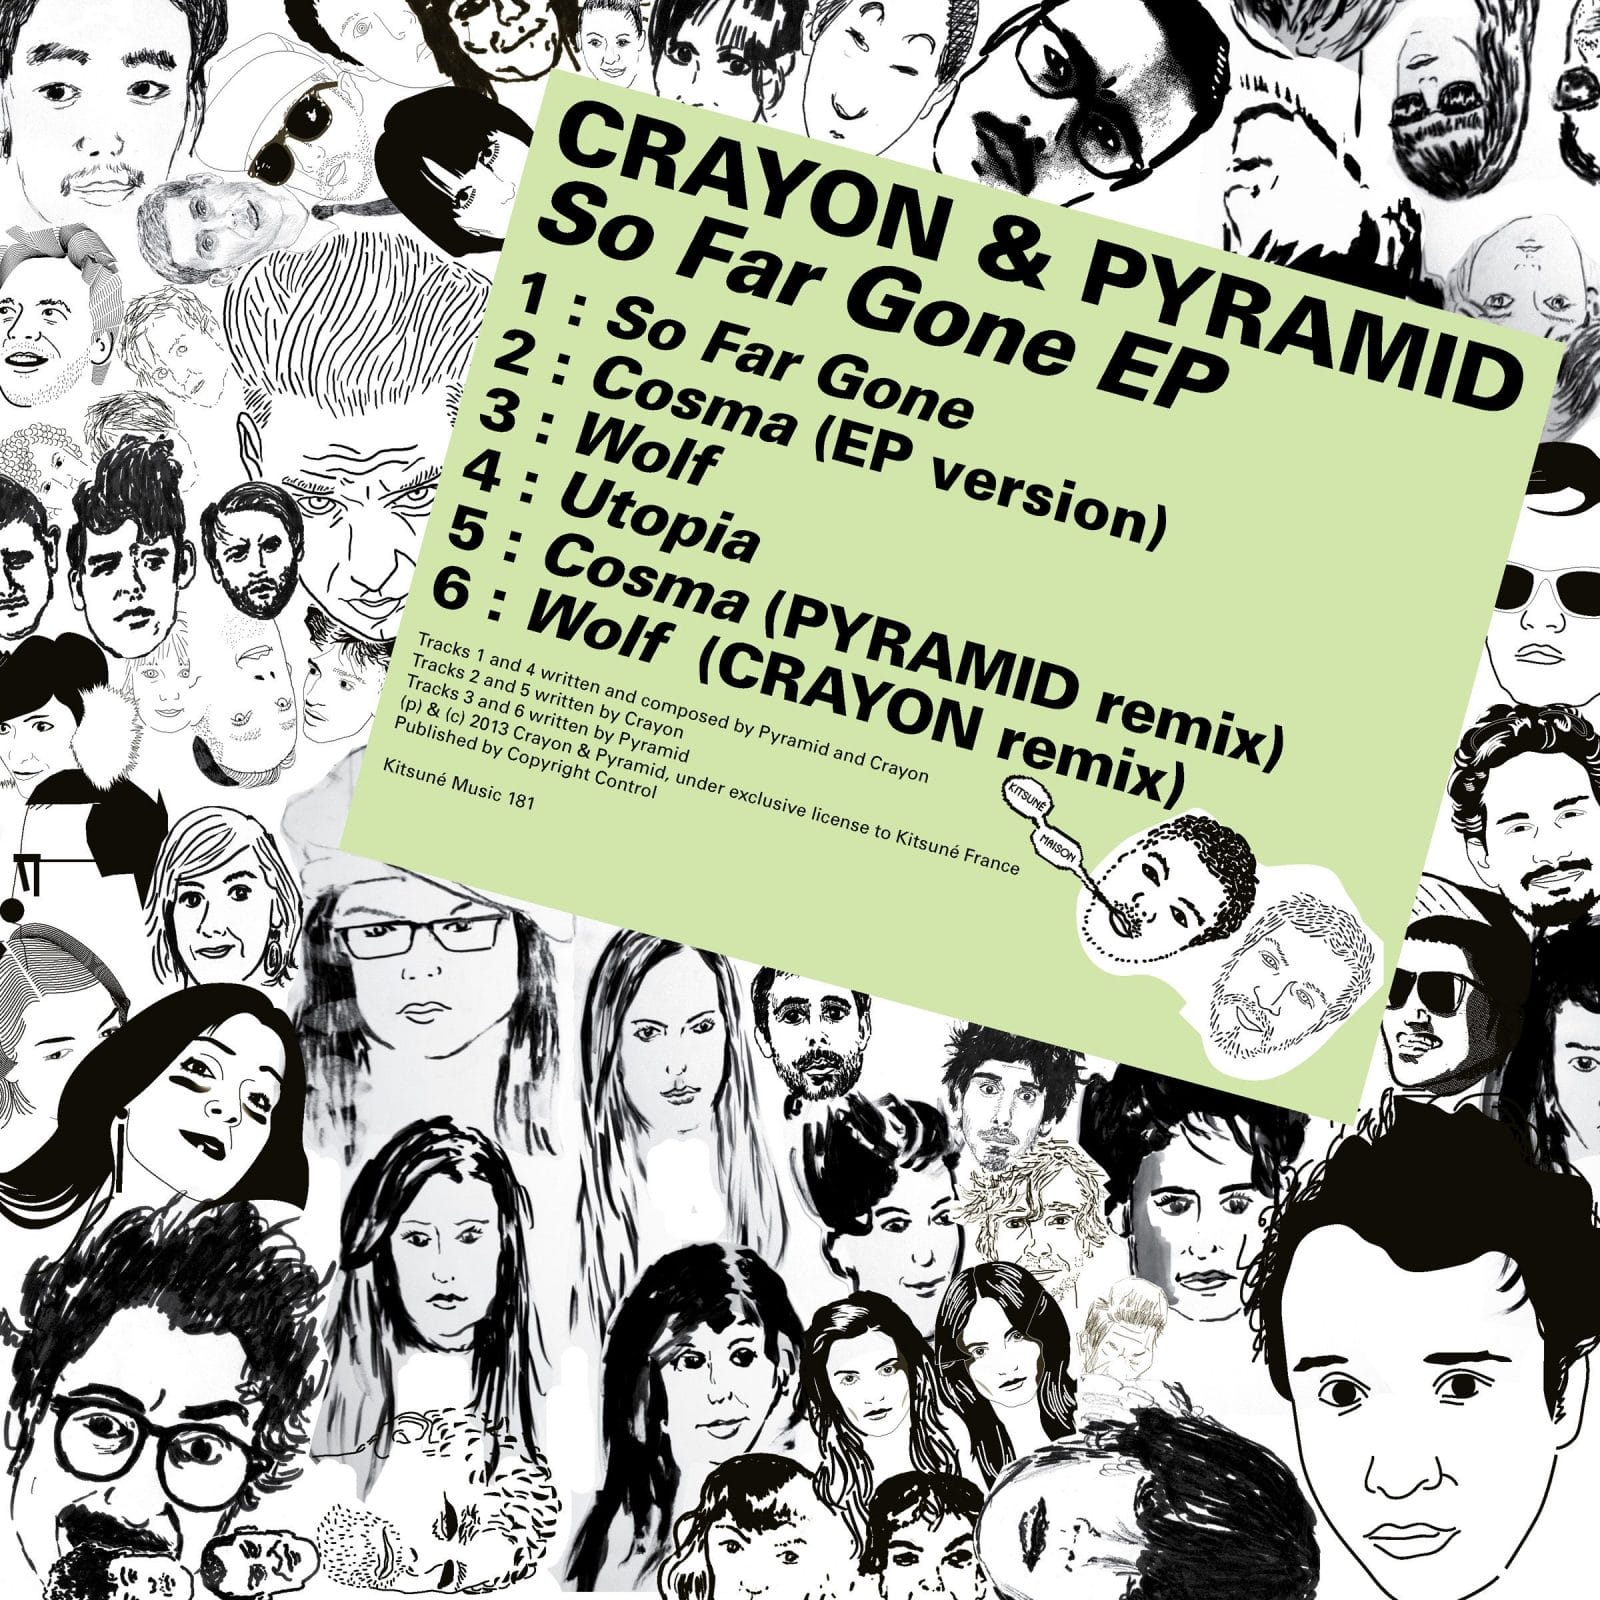 Le Crayon & Pyramid - So Far Gone EP